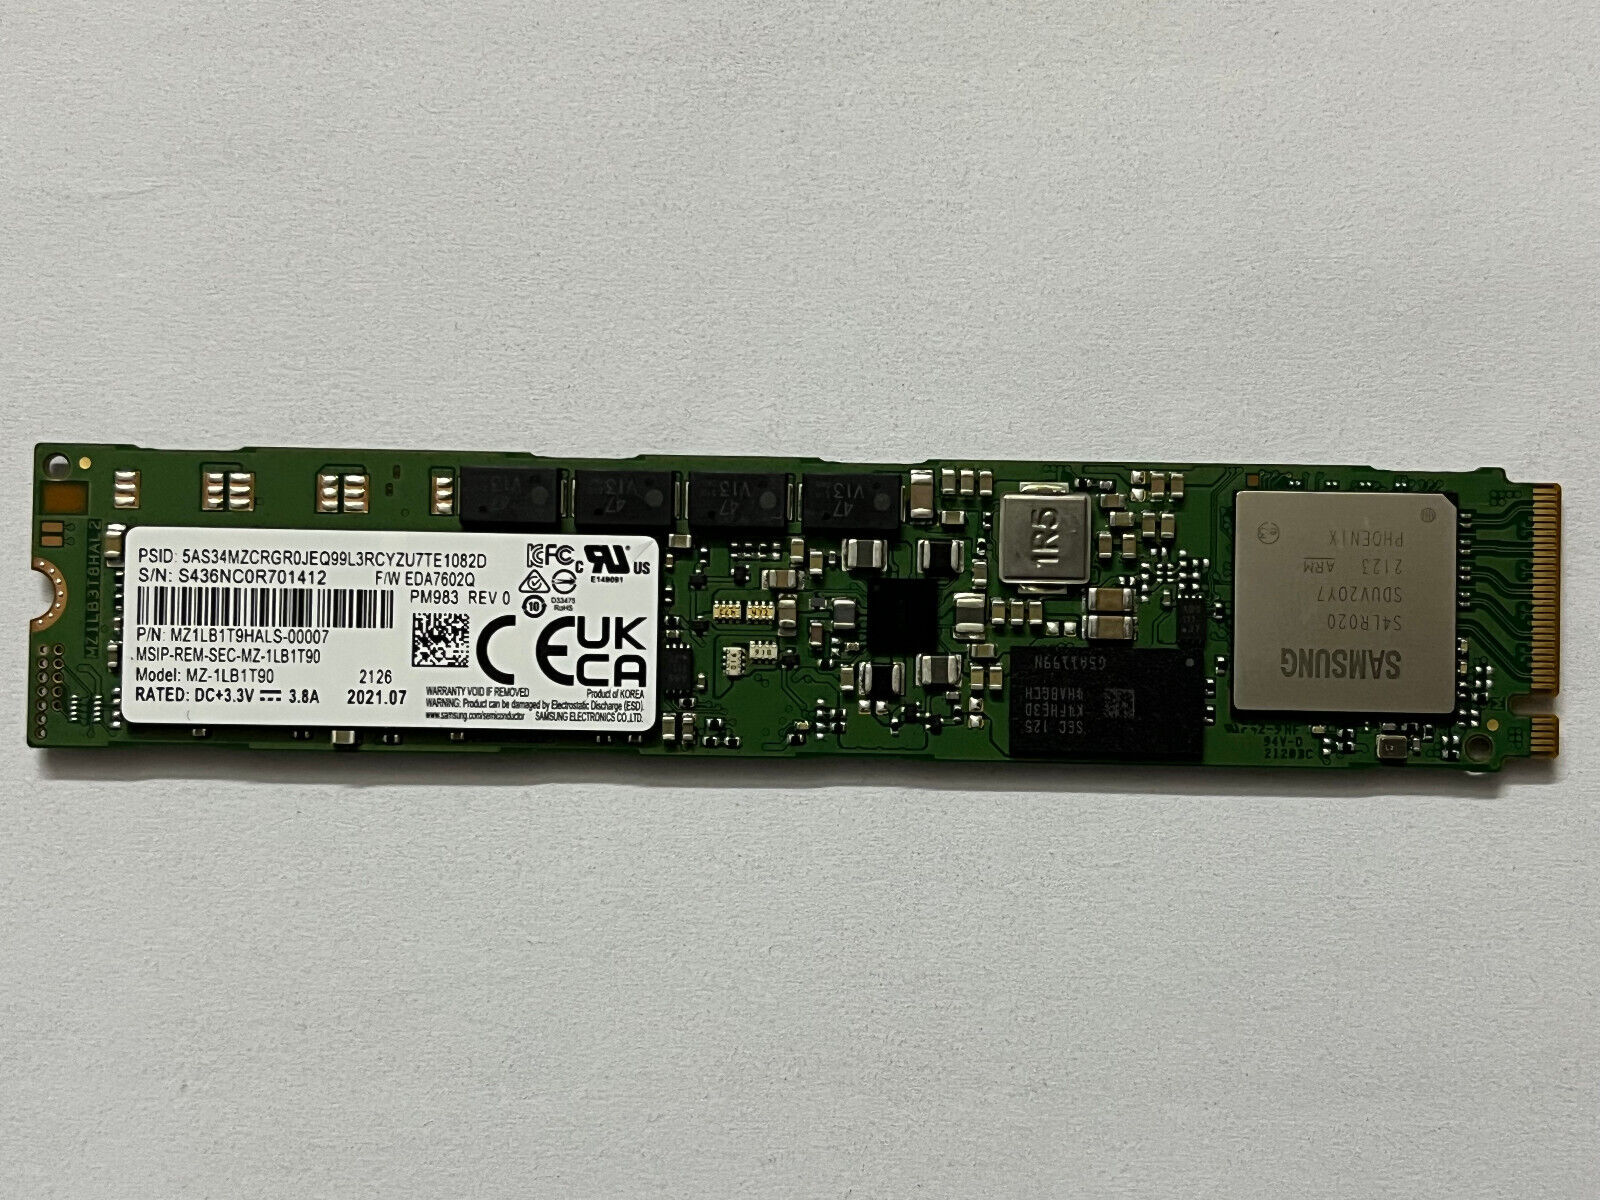 Samsung PM983 MZ-1LB1T90 1.92T SSD PCIe Gen3x4 NVMe M.2 22110 MZ1LB1T9HALS--0007